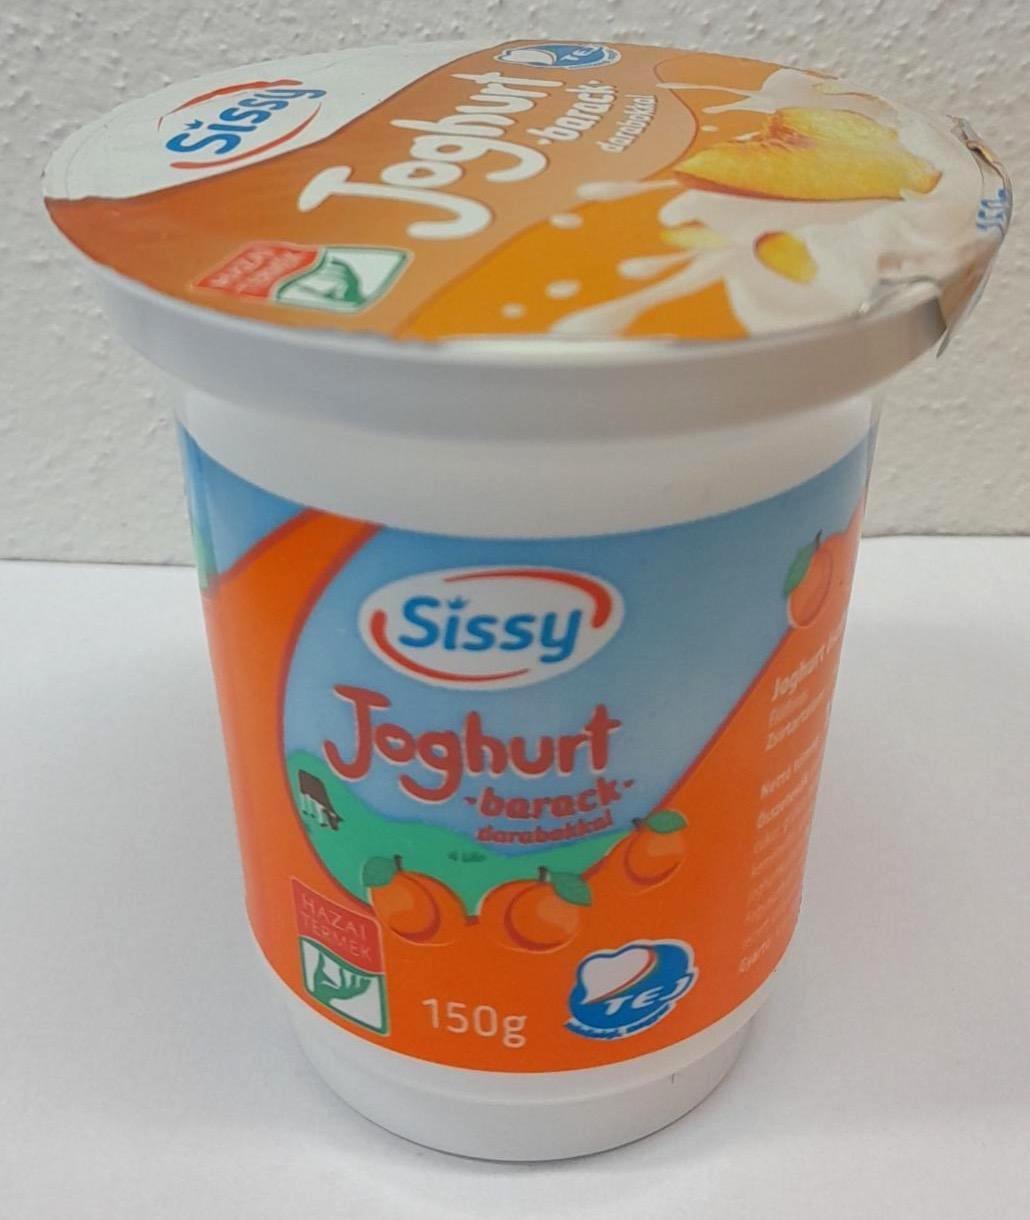 Képek - Joghurt gyümölcsdarabokkal őszibarackos Sissy